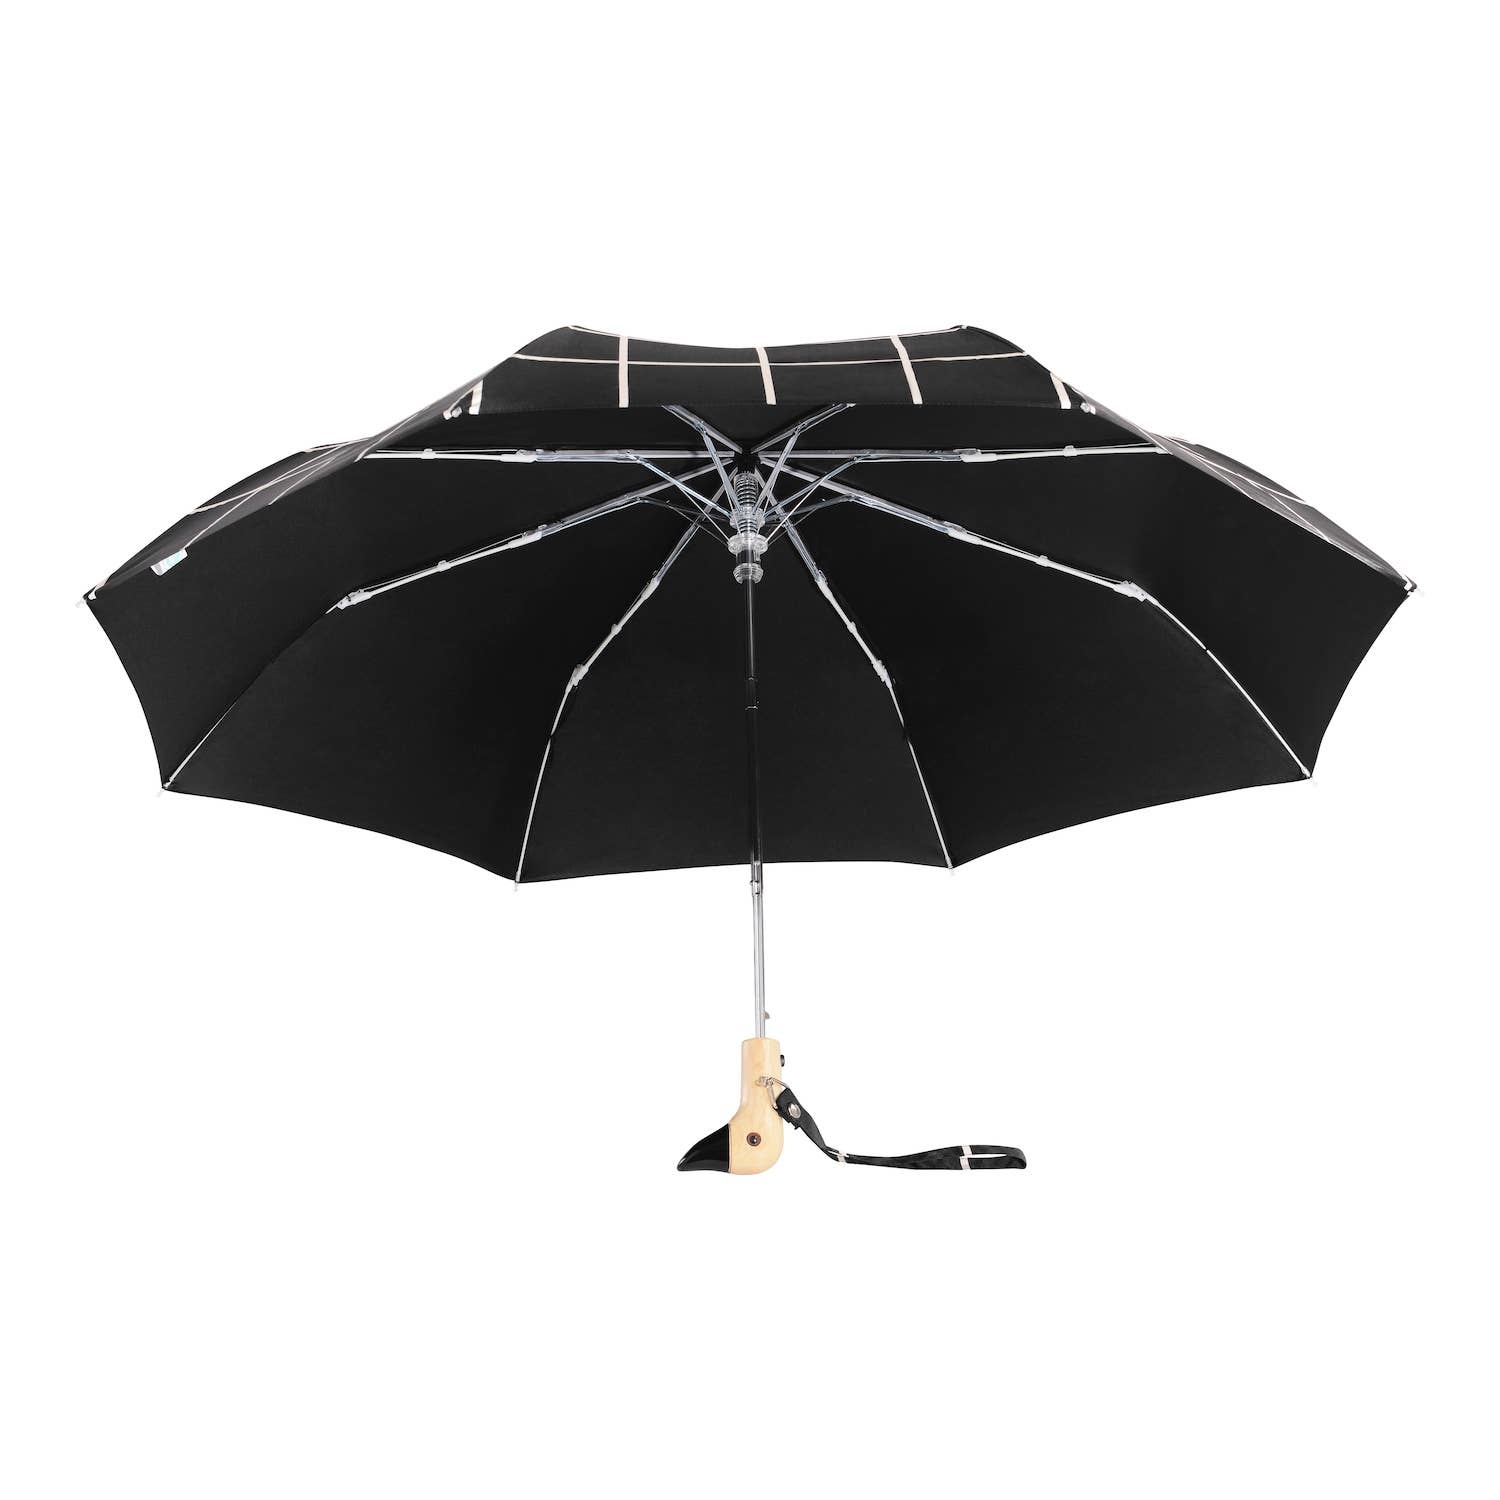 Original Duckhead Compact Umbrella - Black Grid